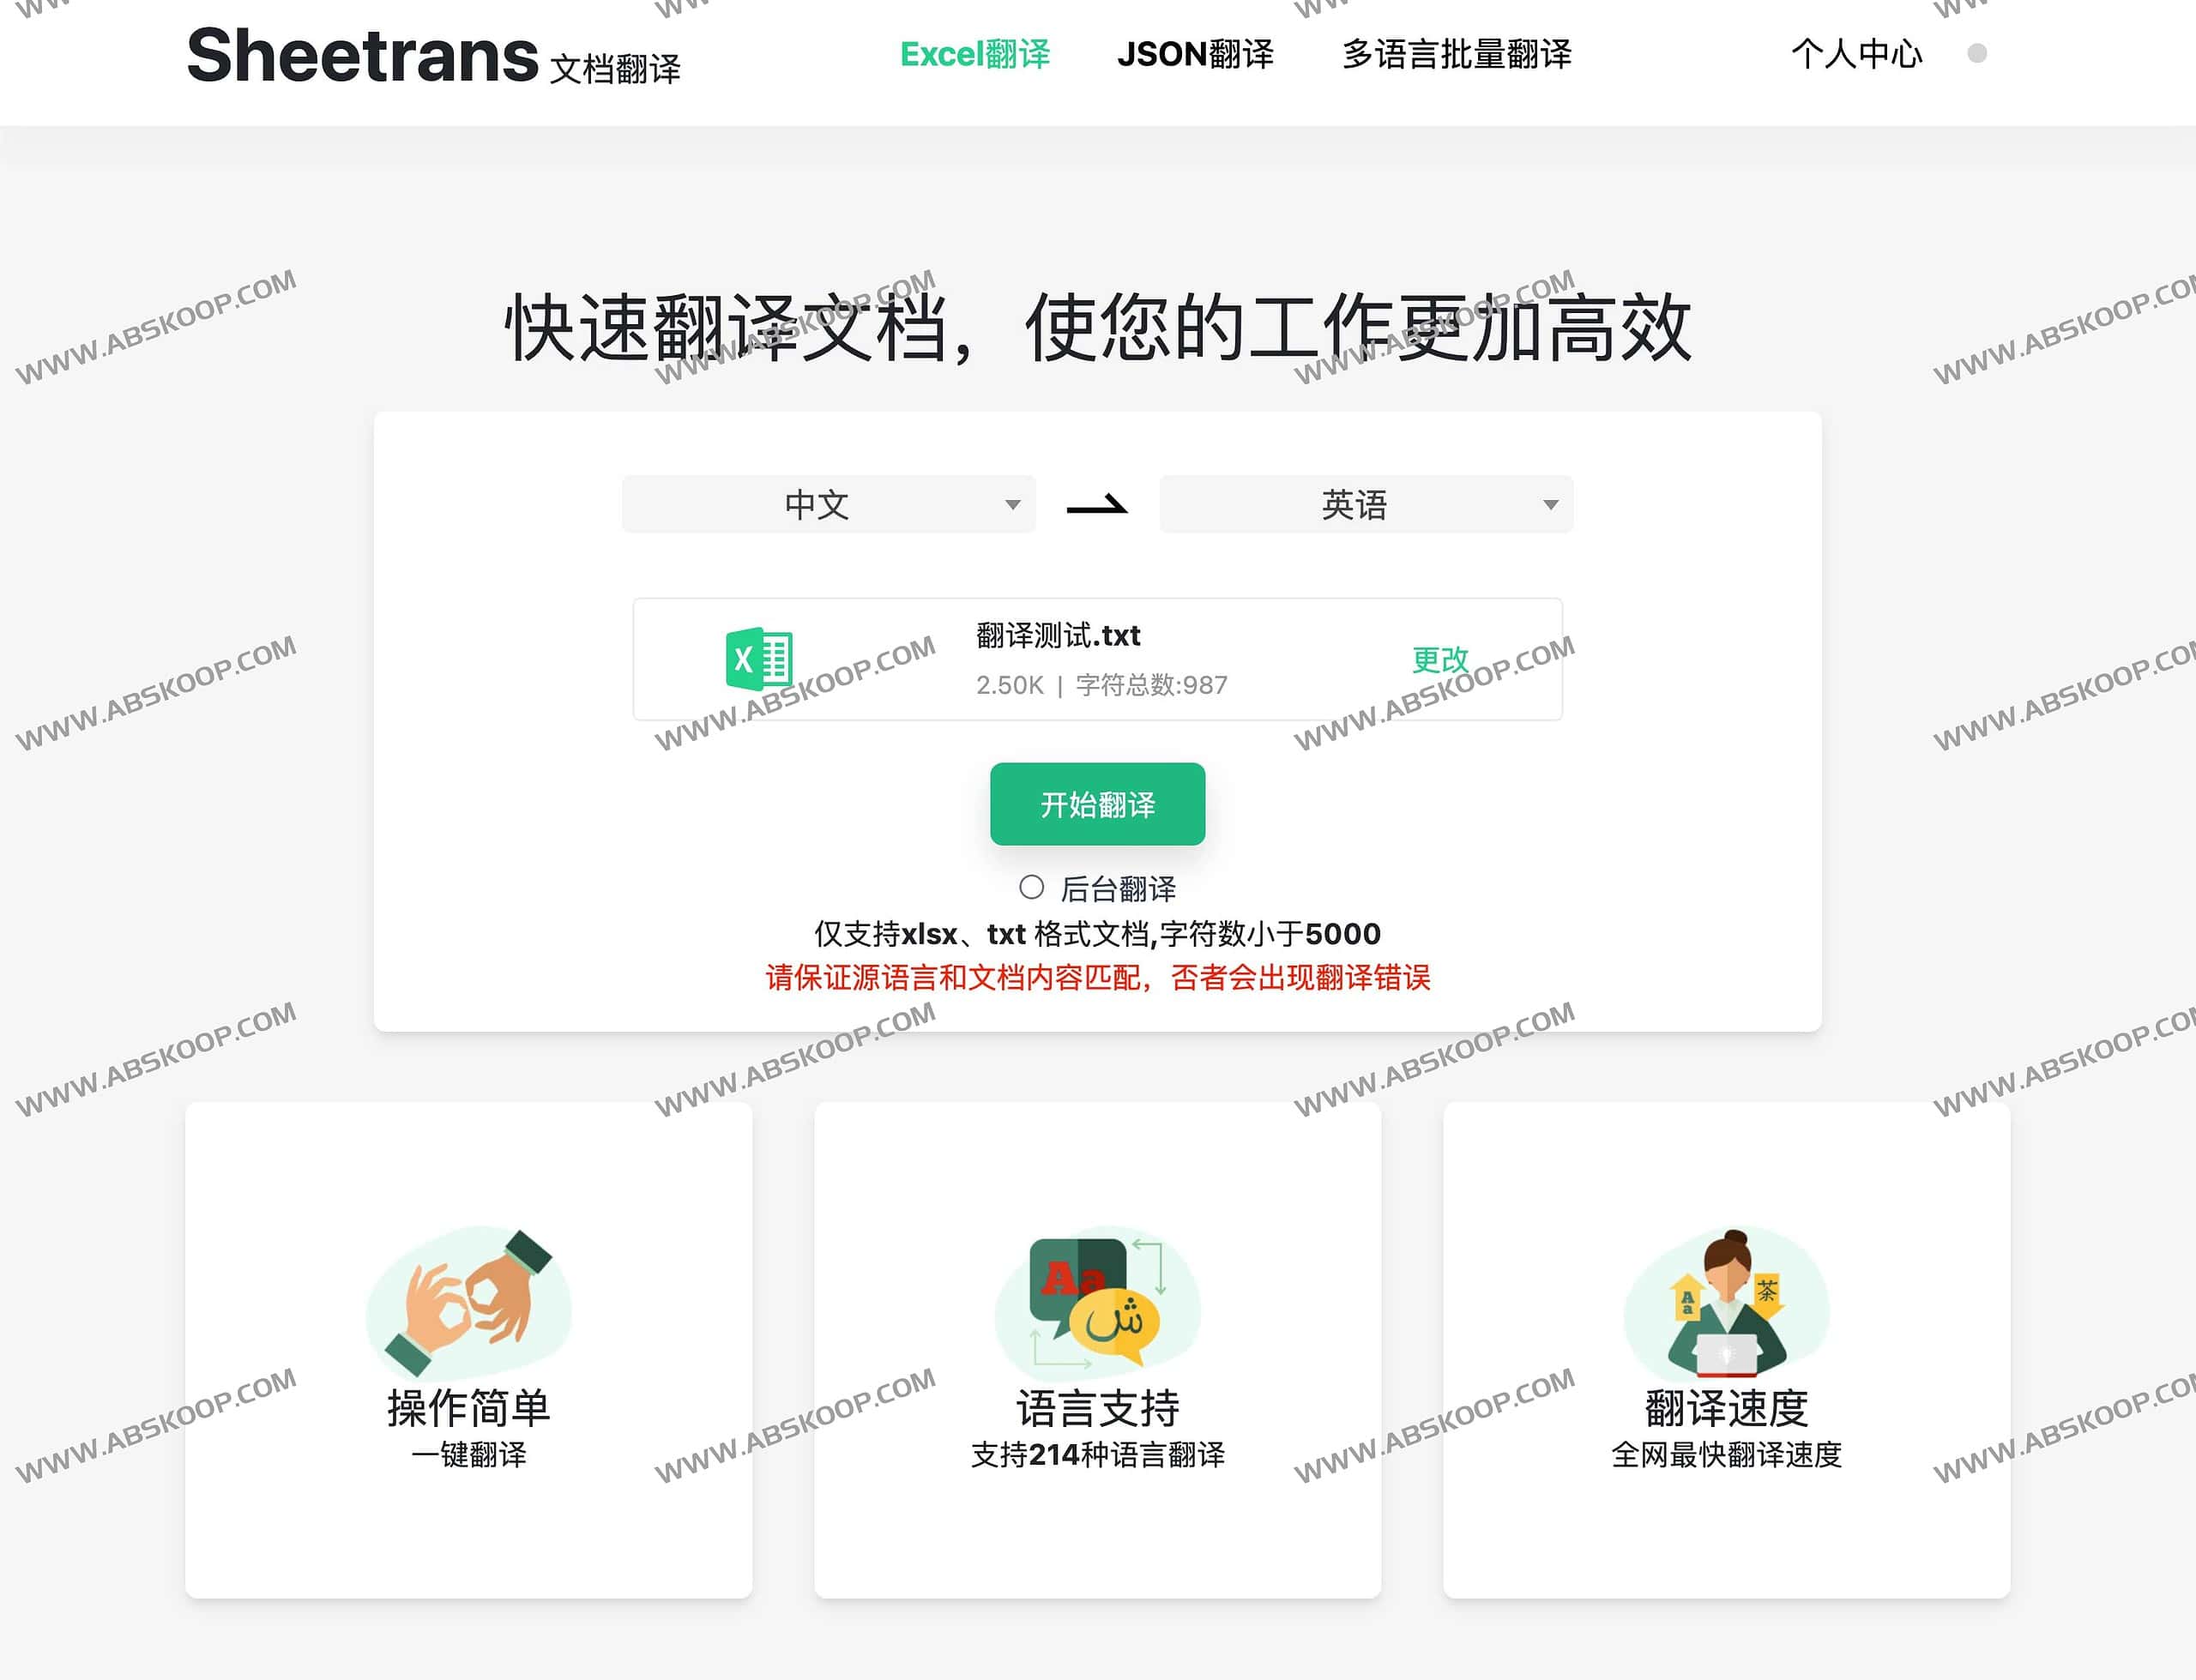 Sheetrans-免费在线快速文档翻译工具 支持214种语言翻译